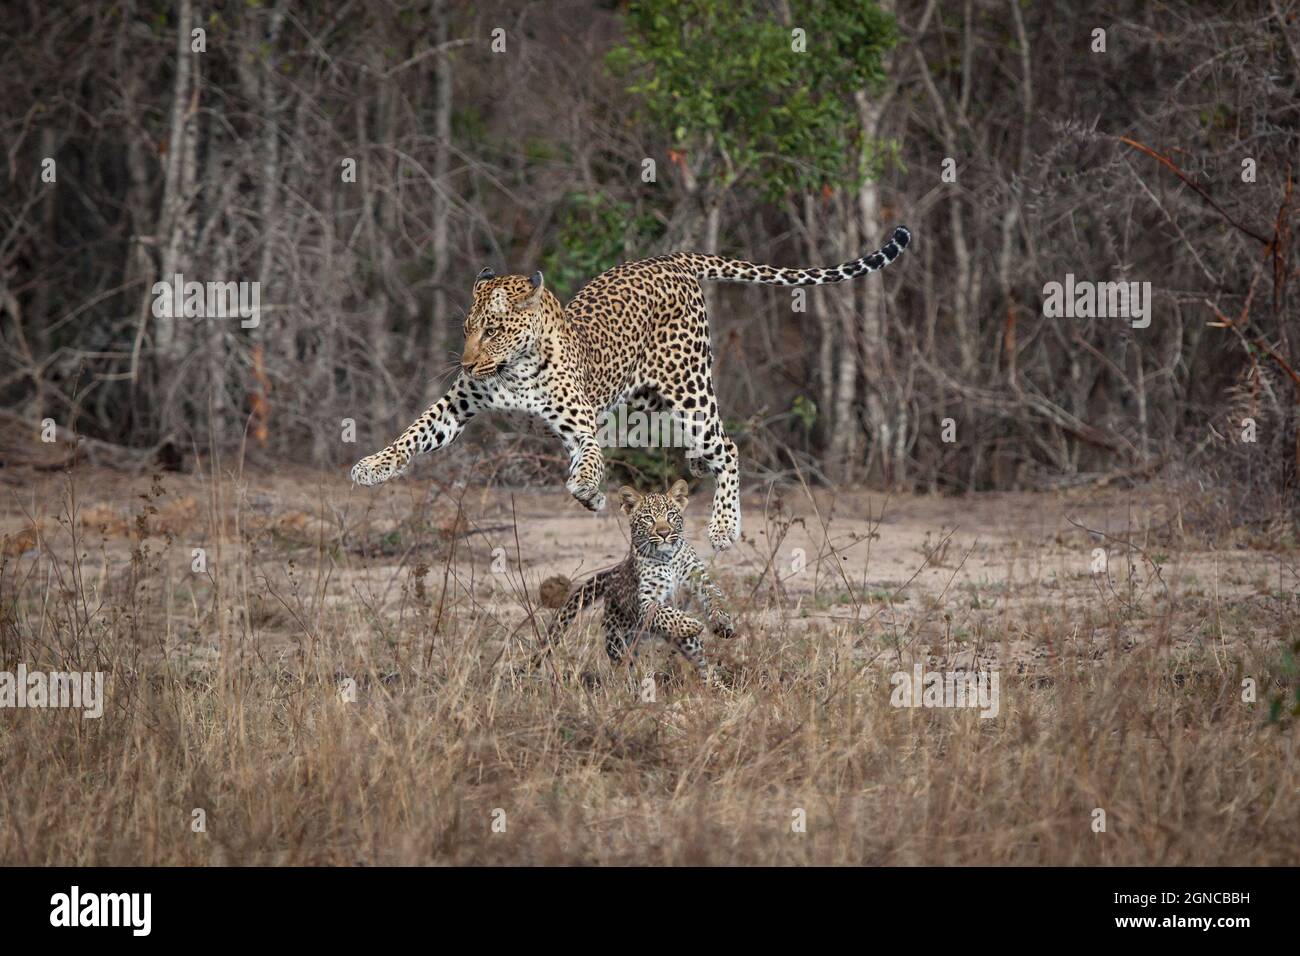 Panthera pardus, eine Leopardenmutter und ein junges Kind, spielen zusammen, indem sie in die Luft springen Stockfoto